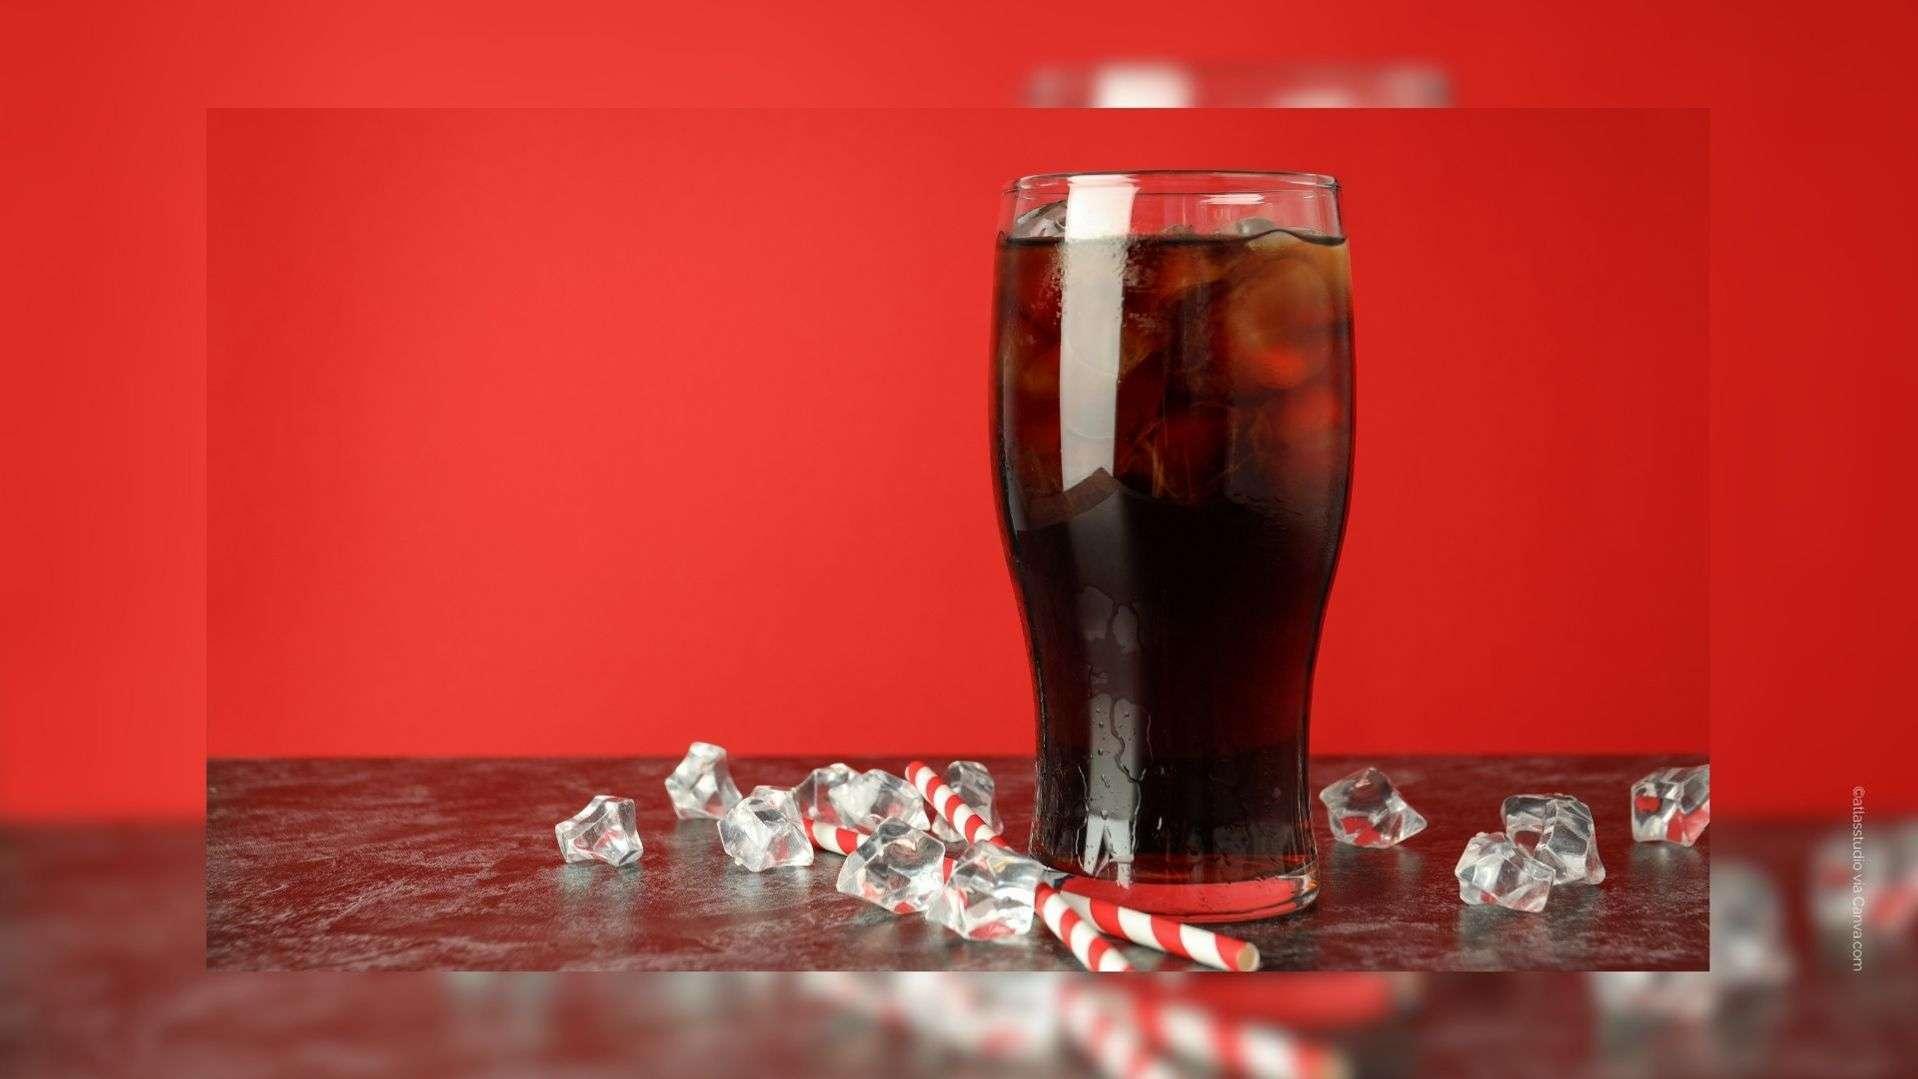 Des canettes de Coca-Cola Cherry visées par un rappel en raison d'un risque pour la santé